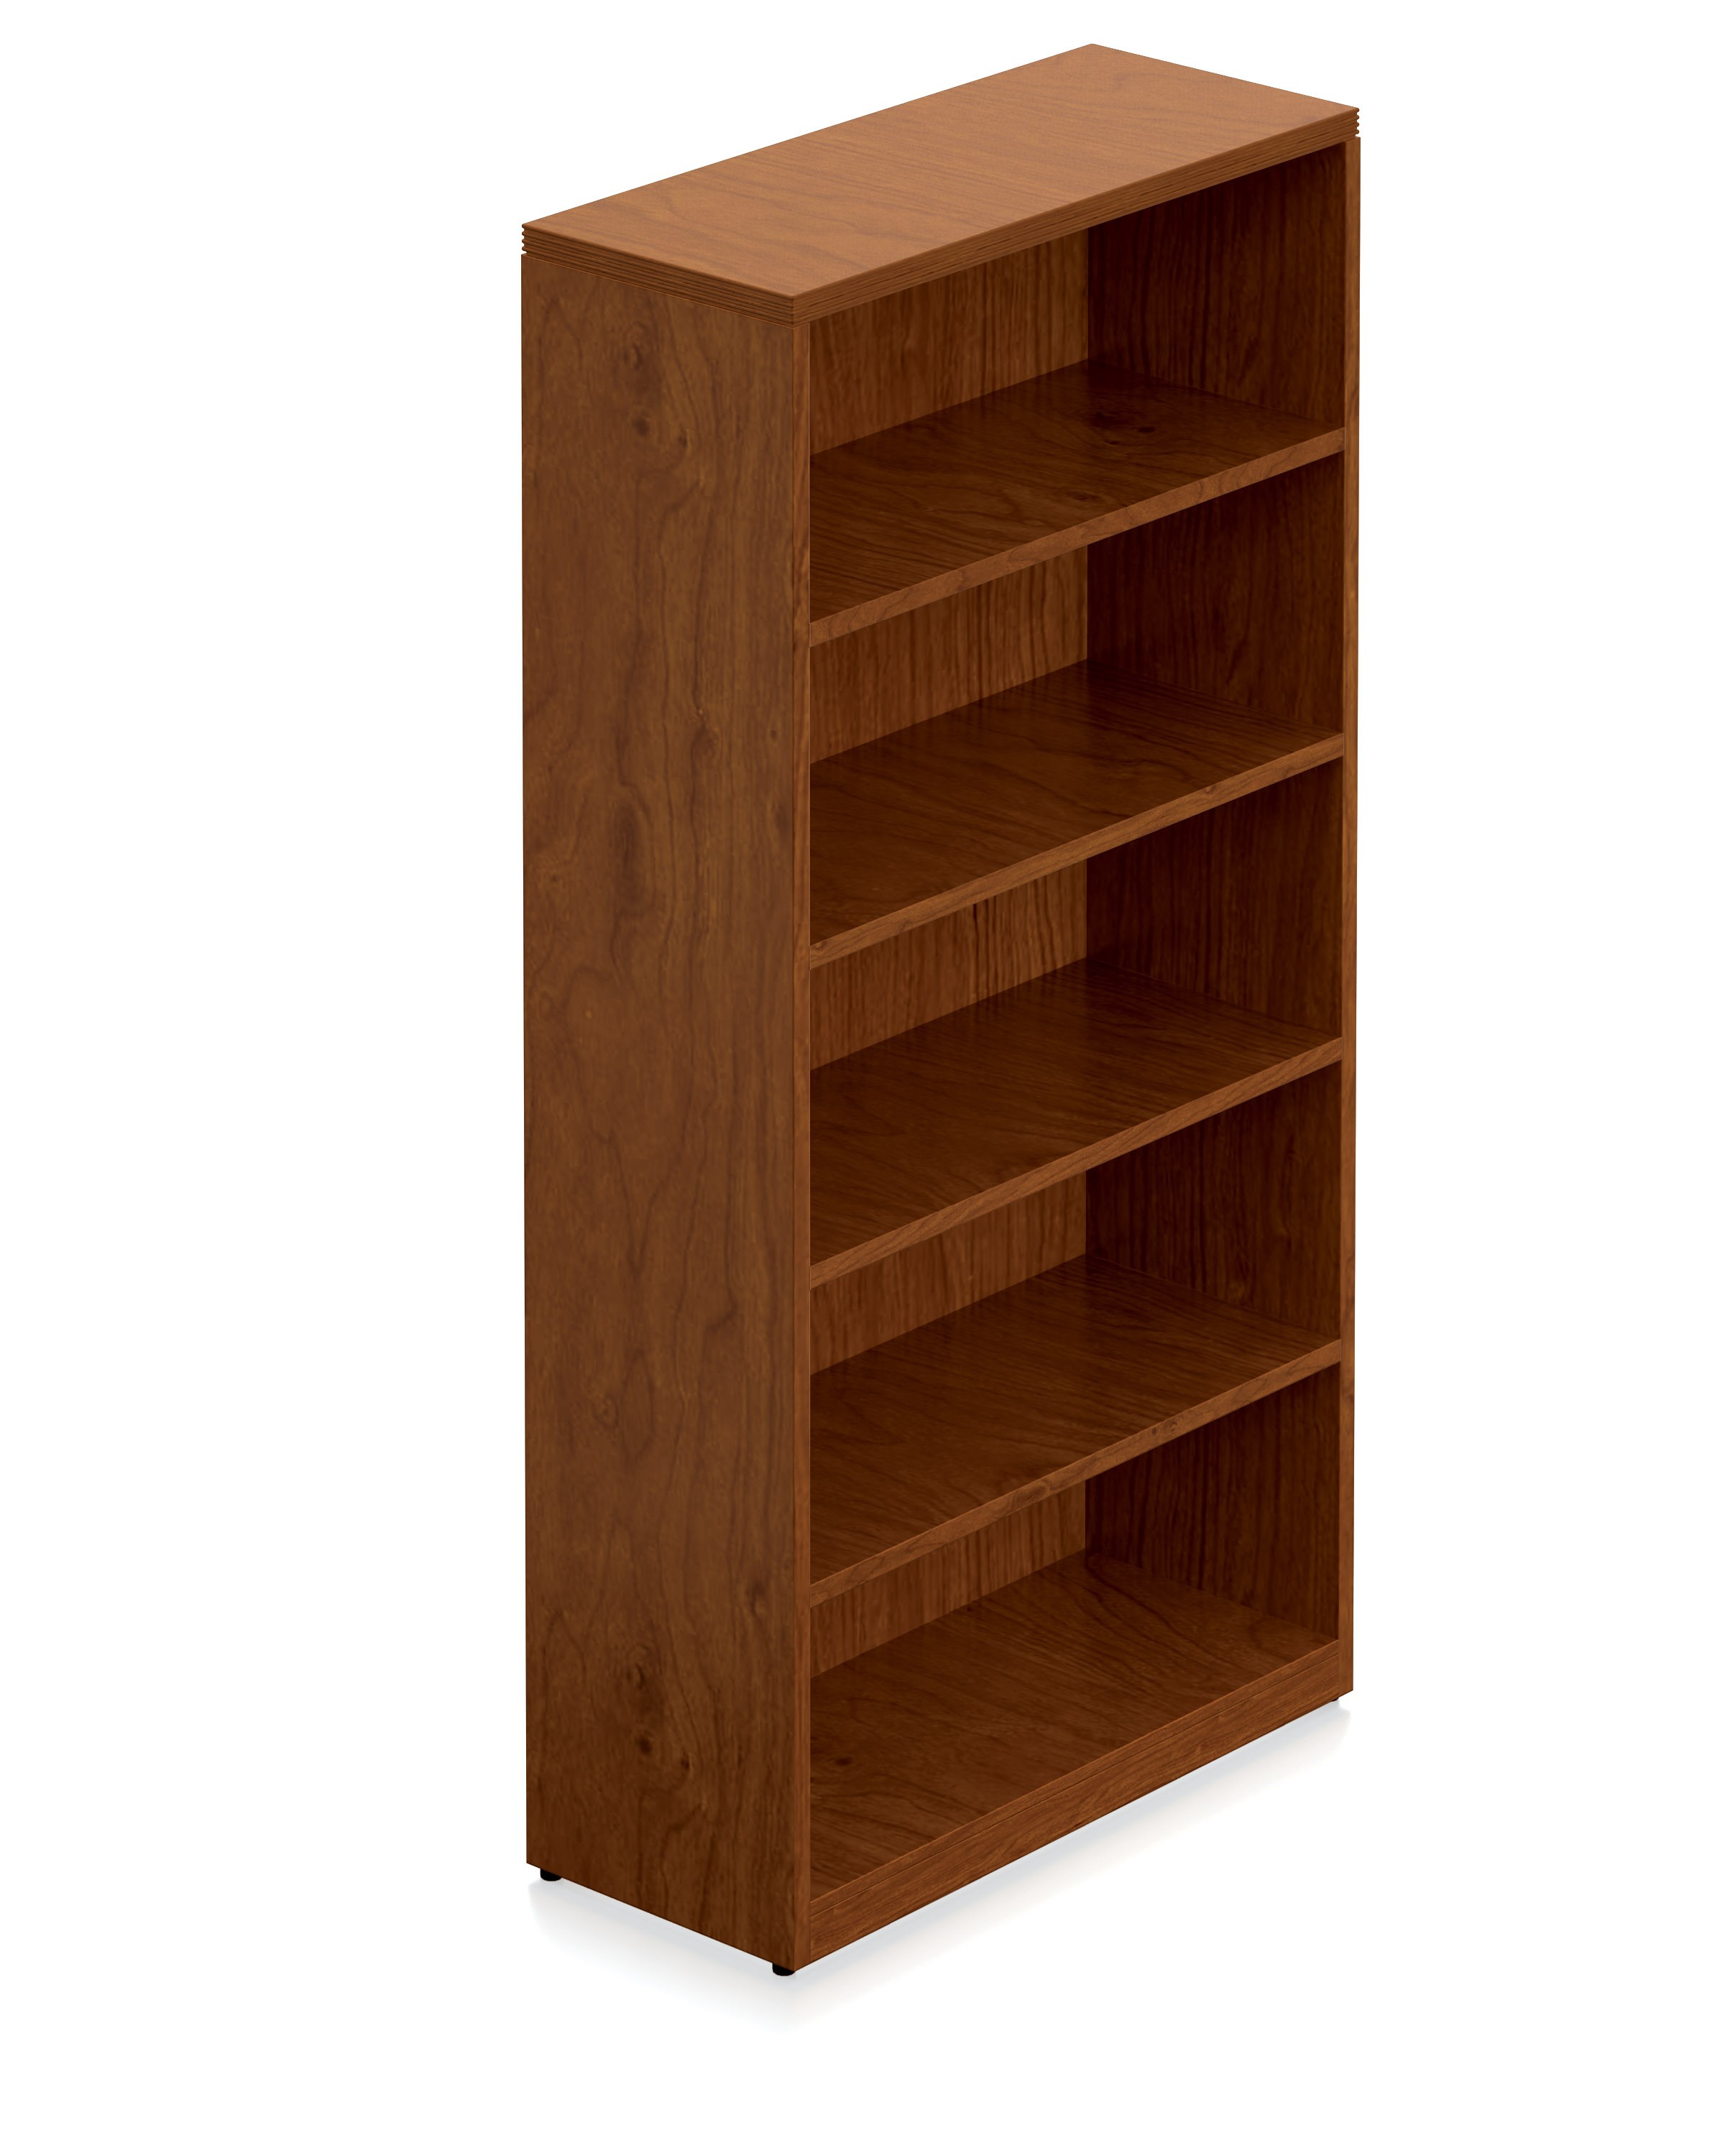 Margate Wood Veneer 70" 5 Shelf Bookcase 